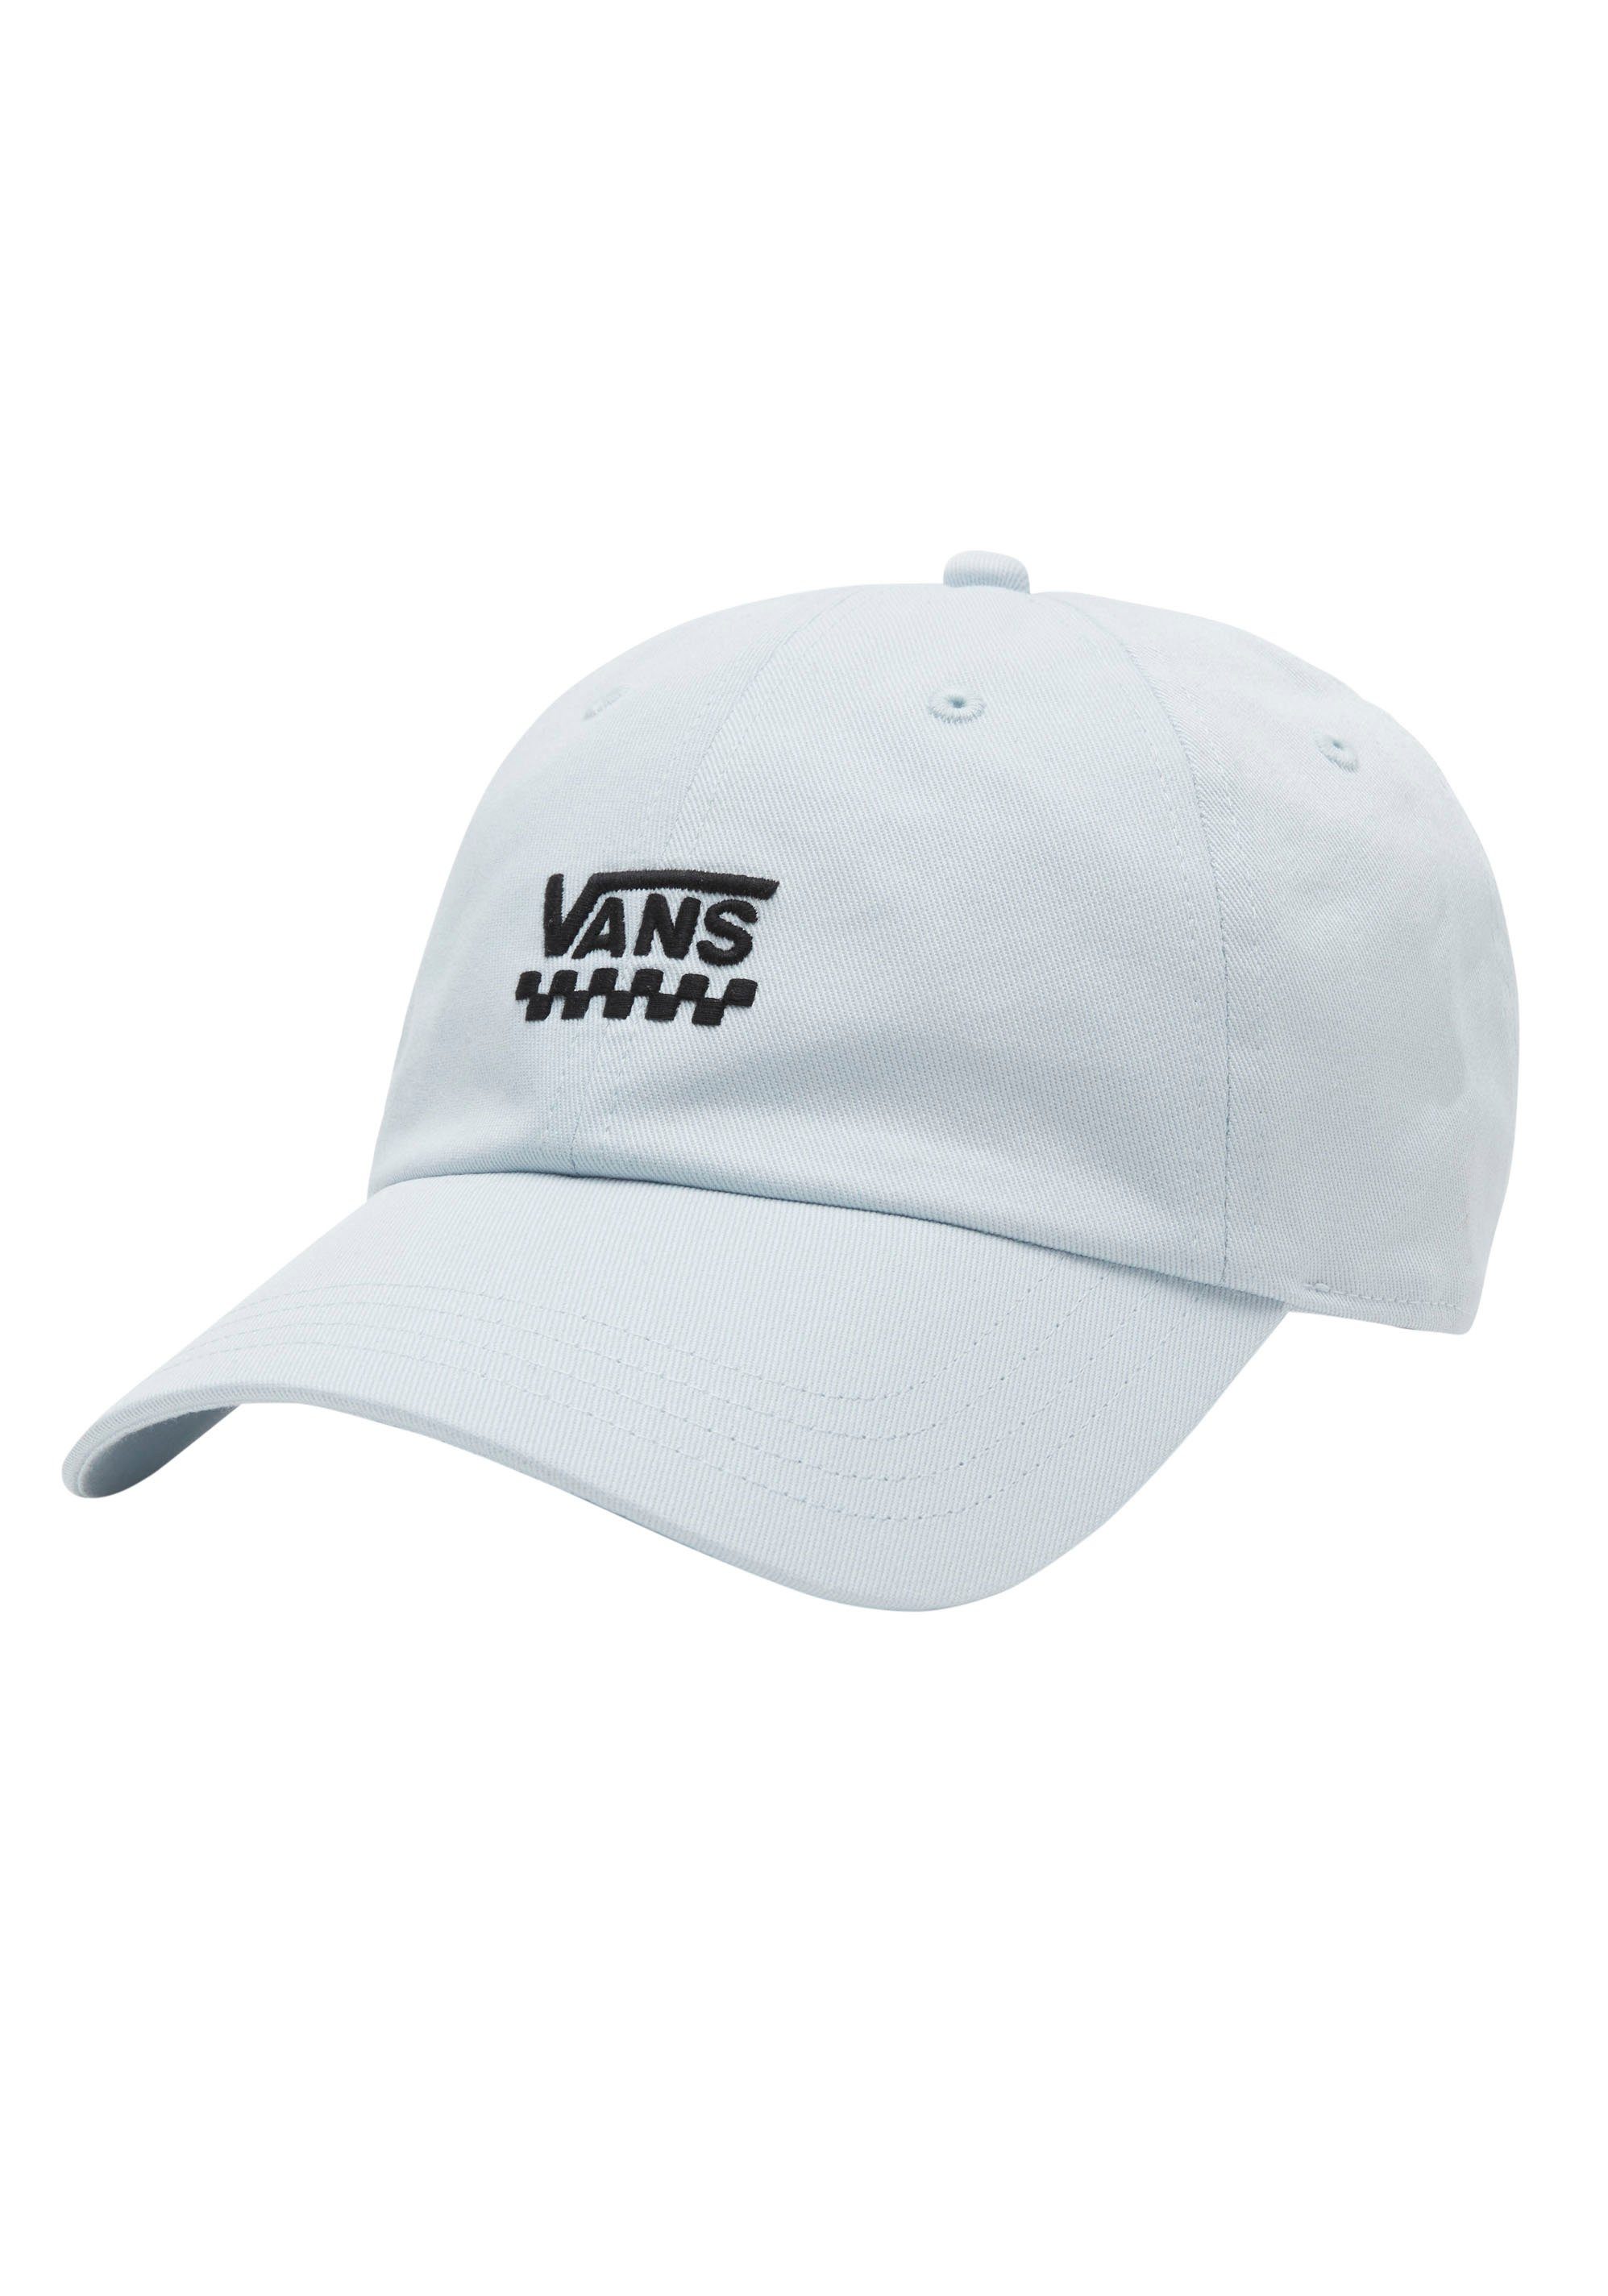 Vans Damen Cap & Kappe online kaufen | OTTO